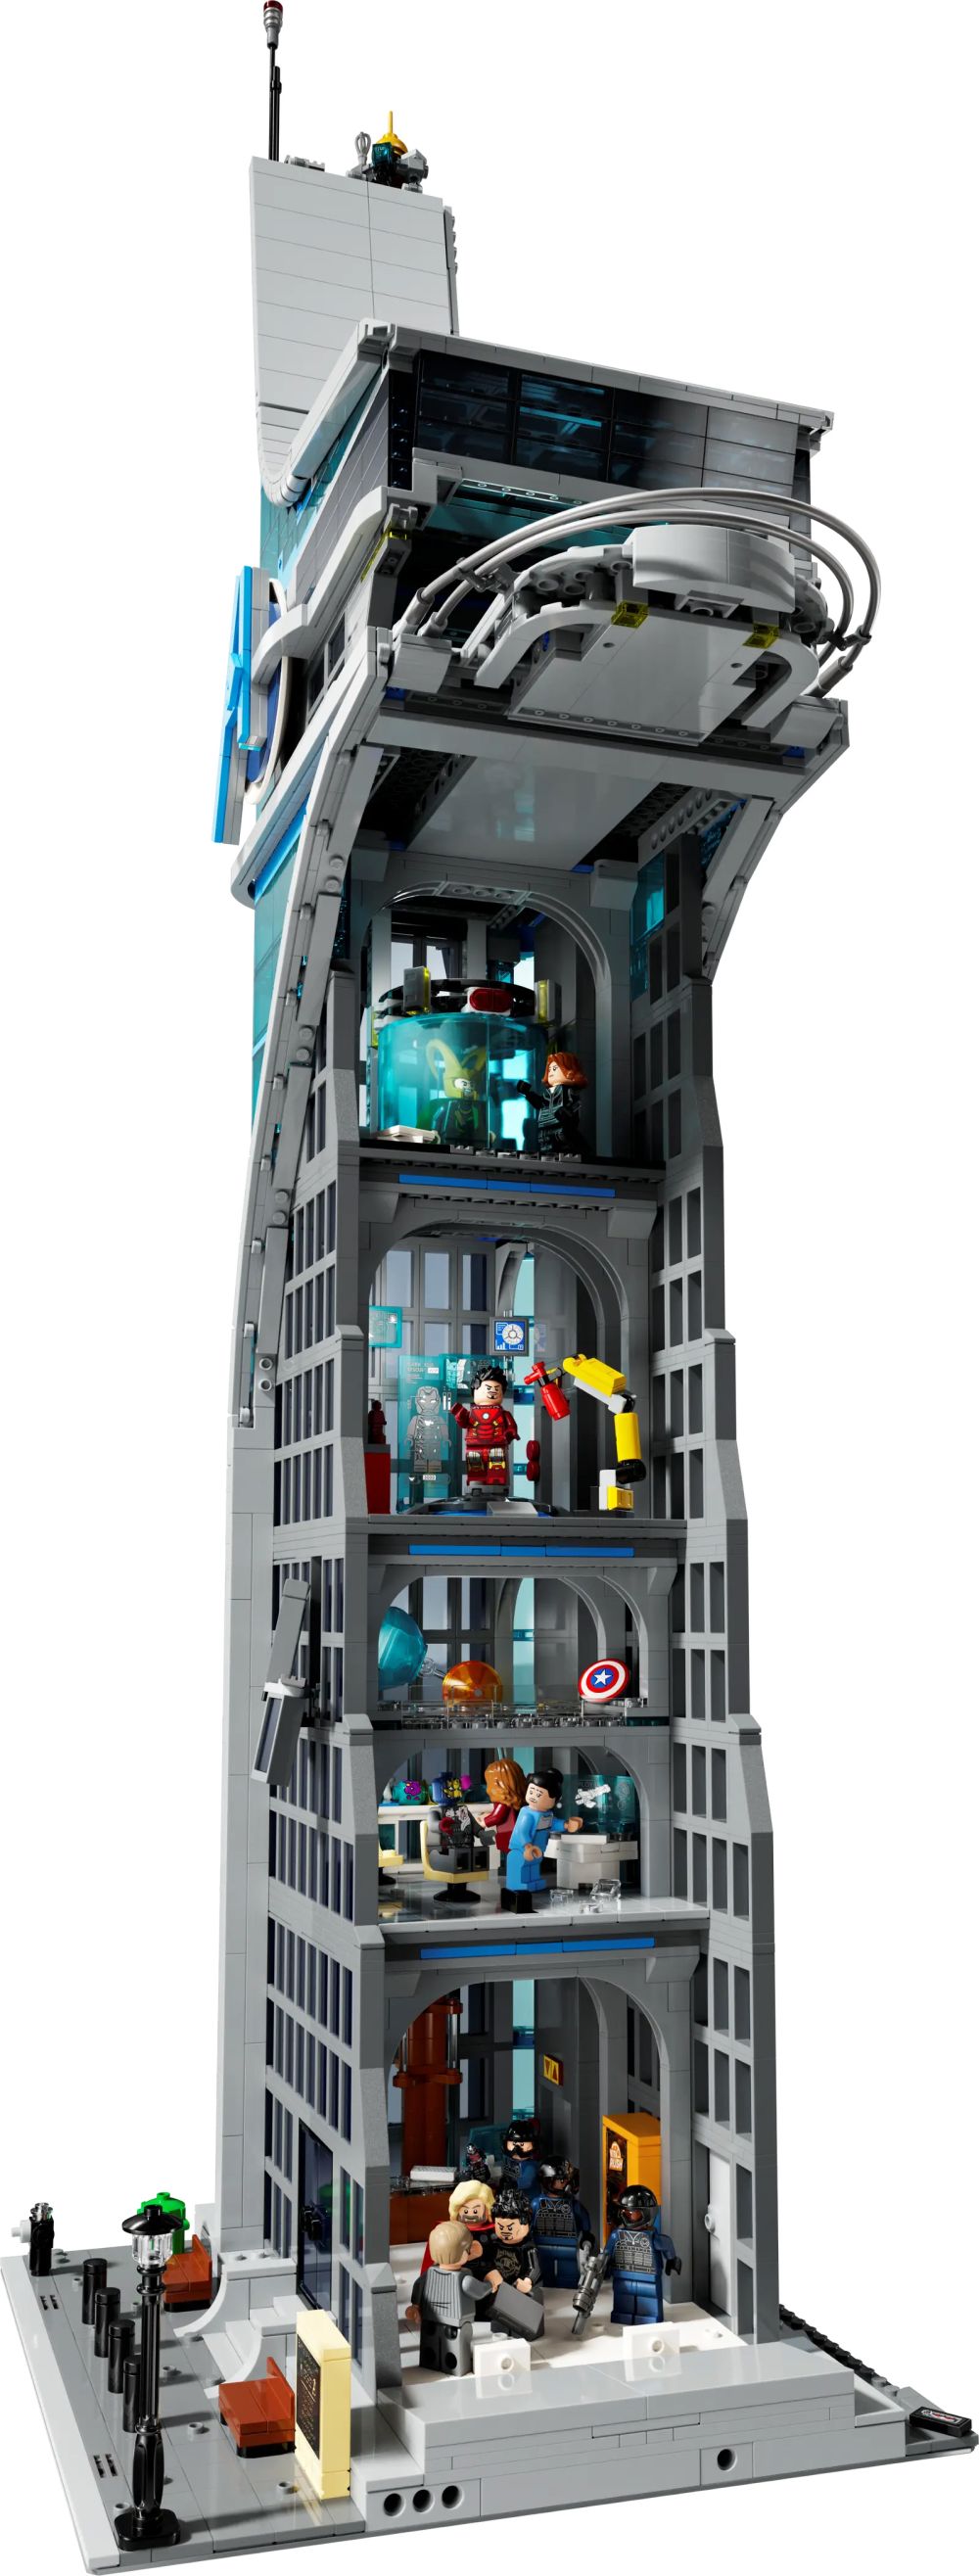 LEGO Marvel 76269 pas cher, La tour des Avengers